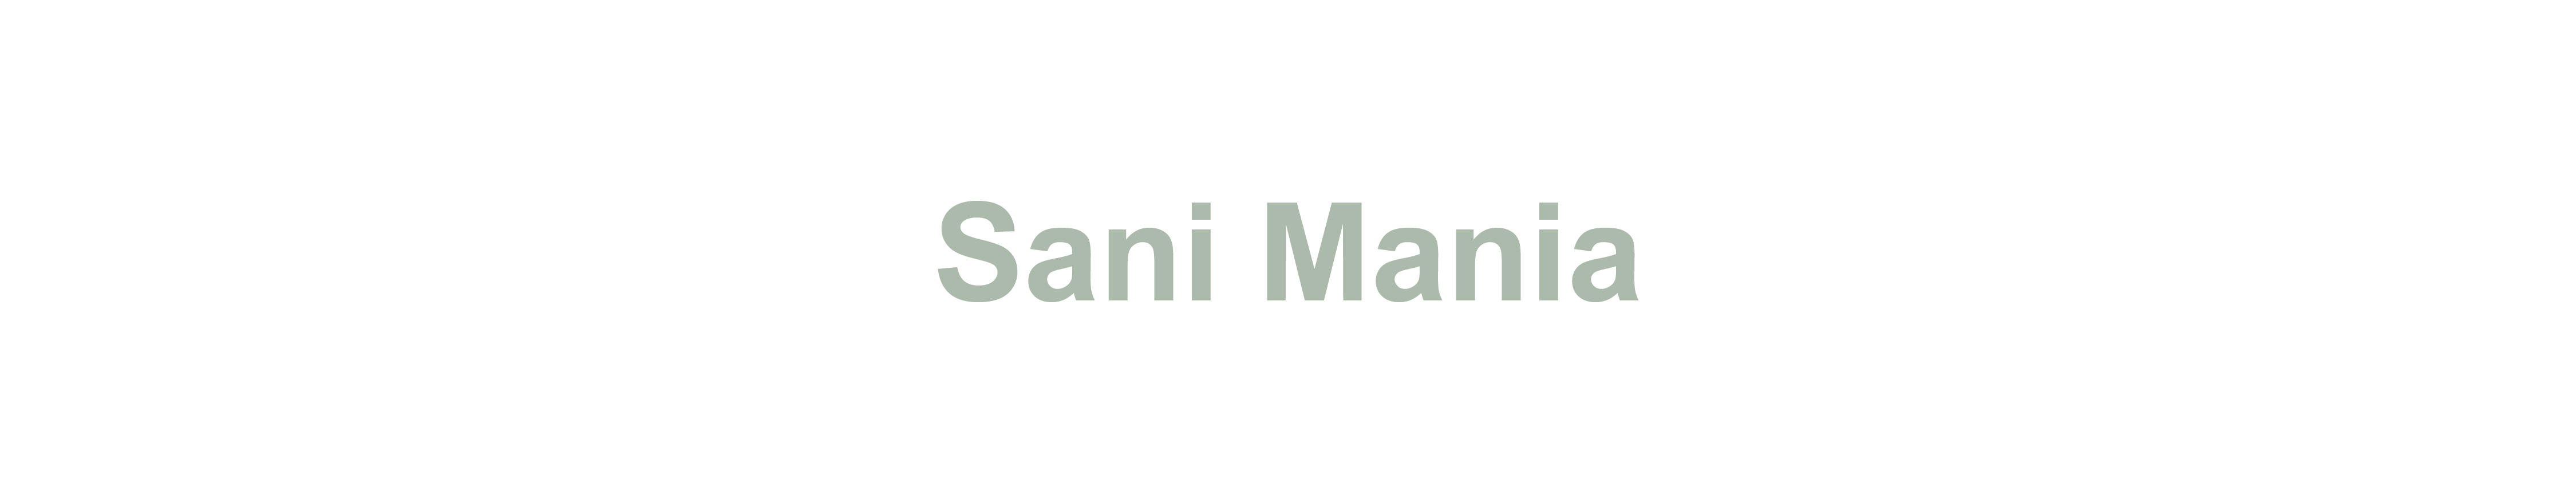 Sani Mania